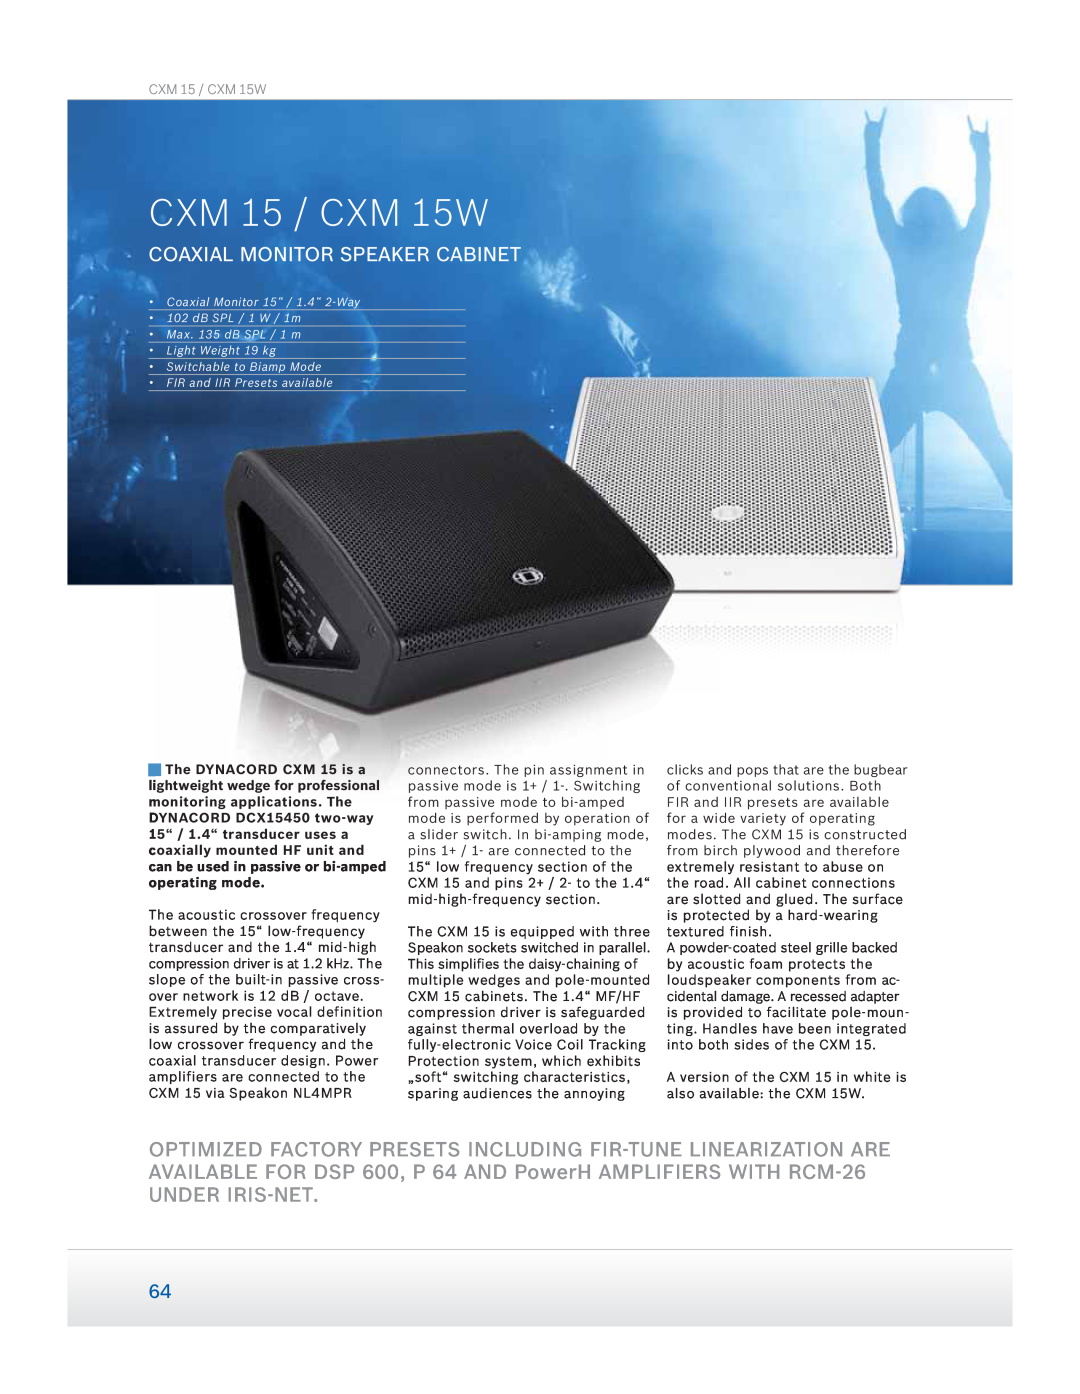 Dynacord manual CXM 15 / CXM 15W, Coaxial Monitor Speaker Cabinet, Under Iris-Net 